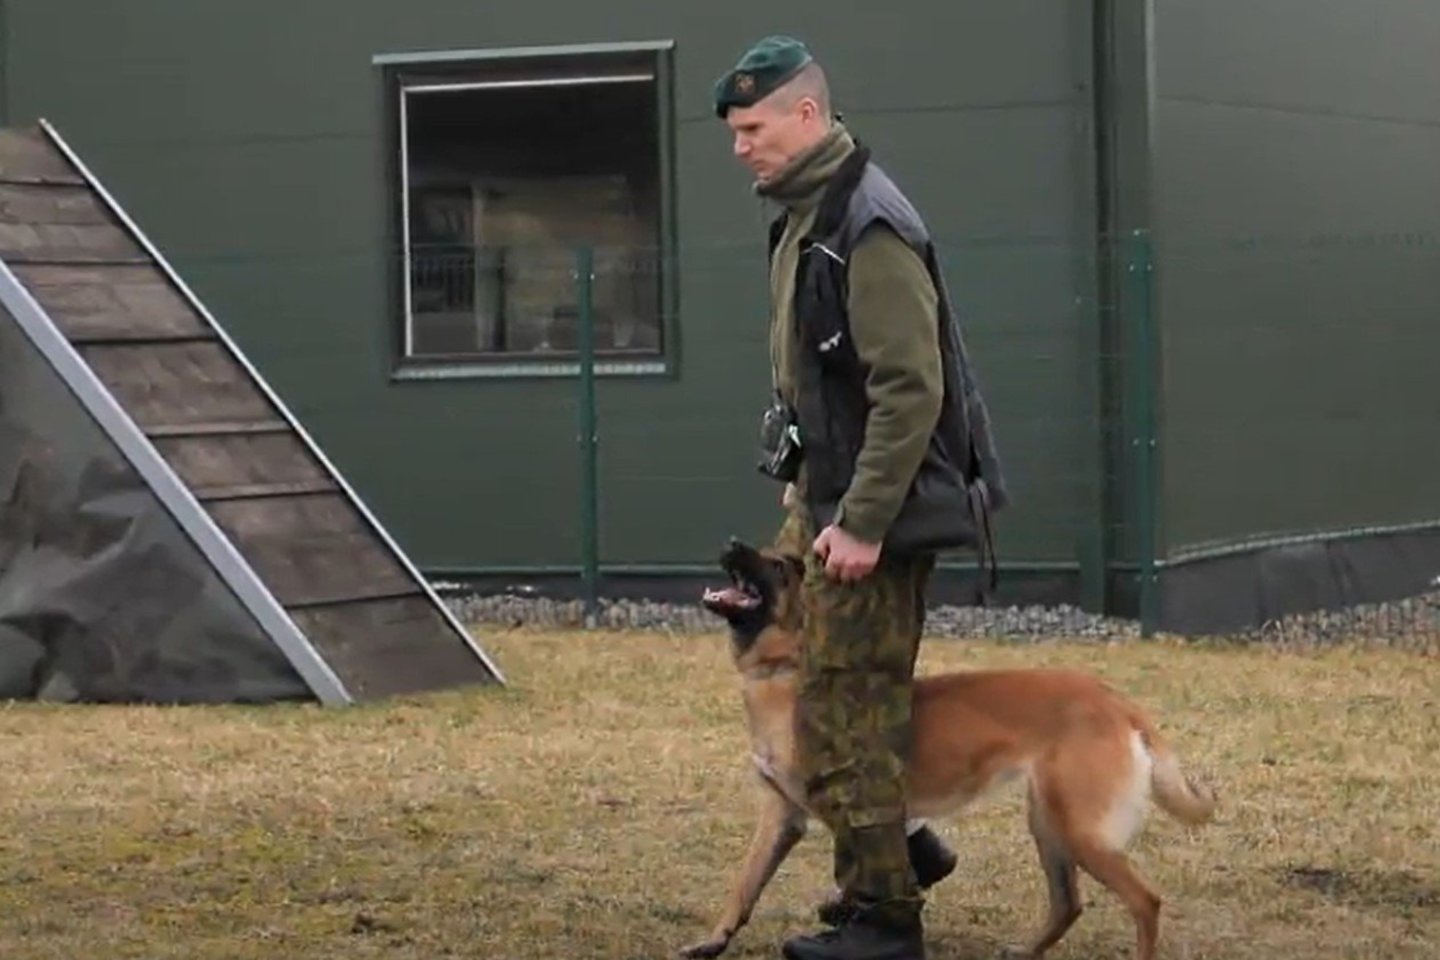  Šunys, padedantys kariams tarnybos metu, itin vertinami.<br> Stop kadras